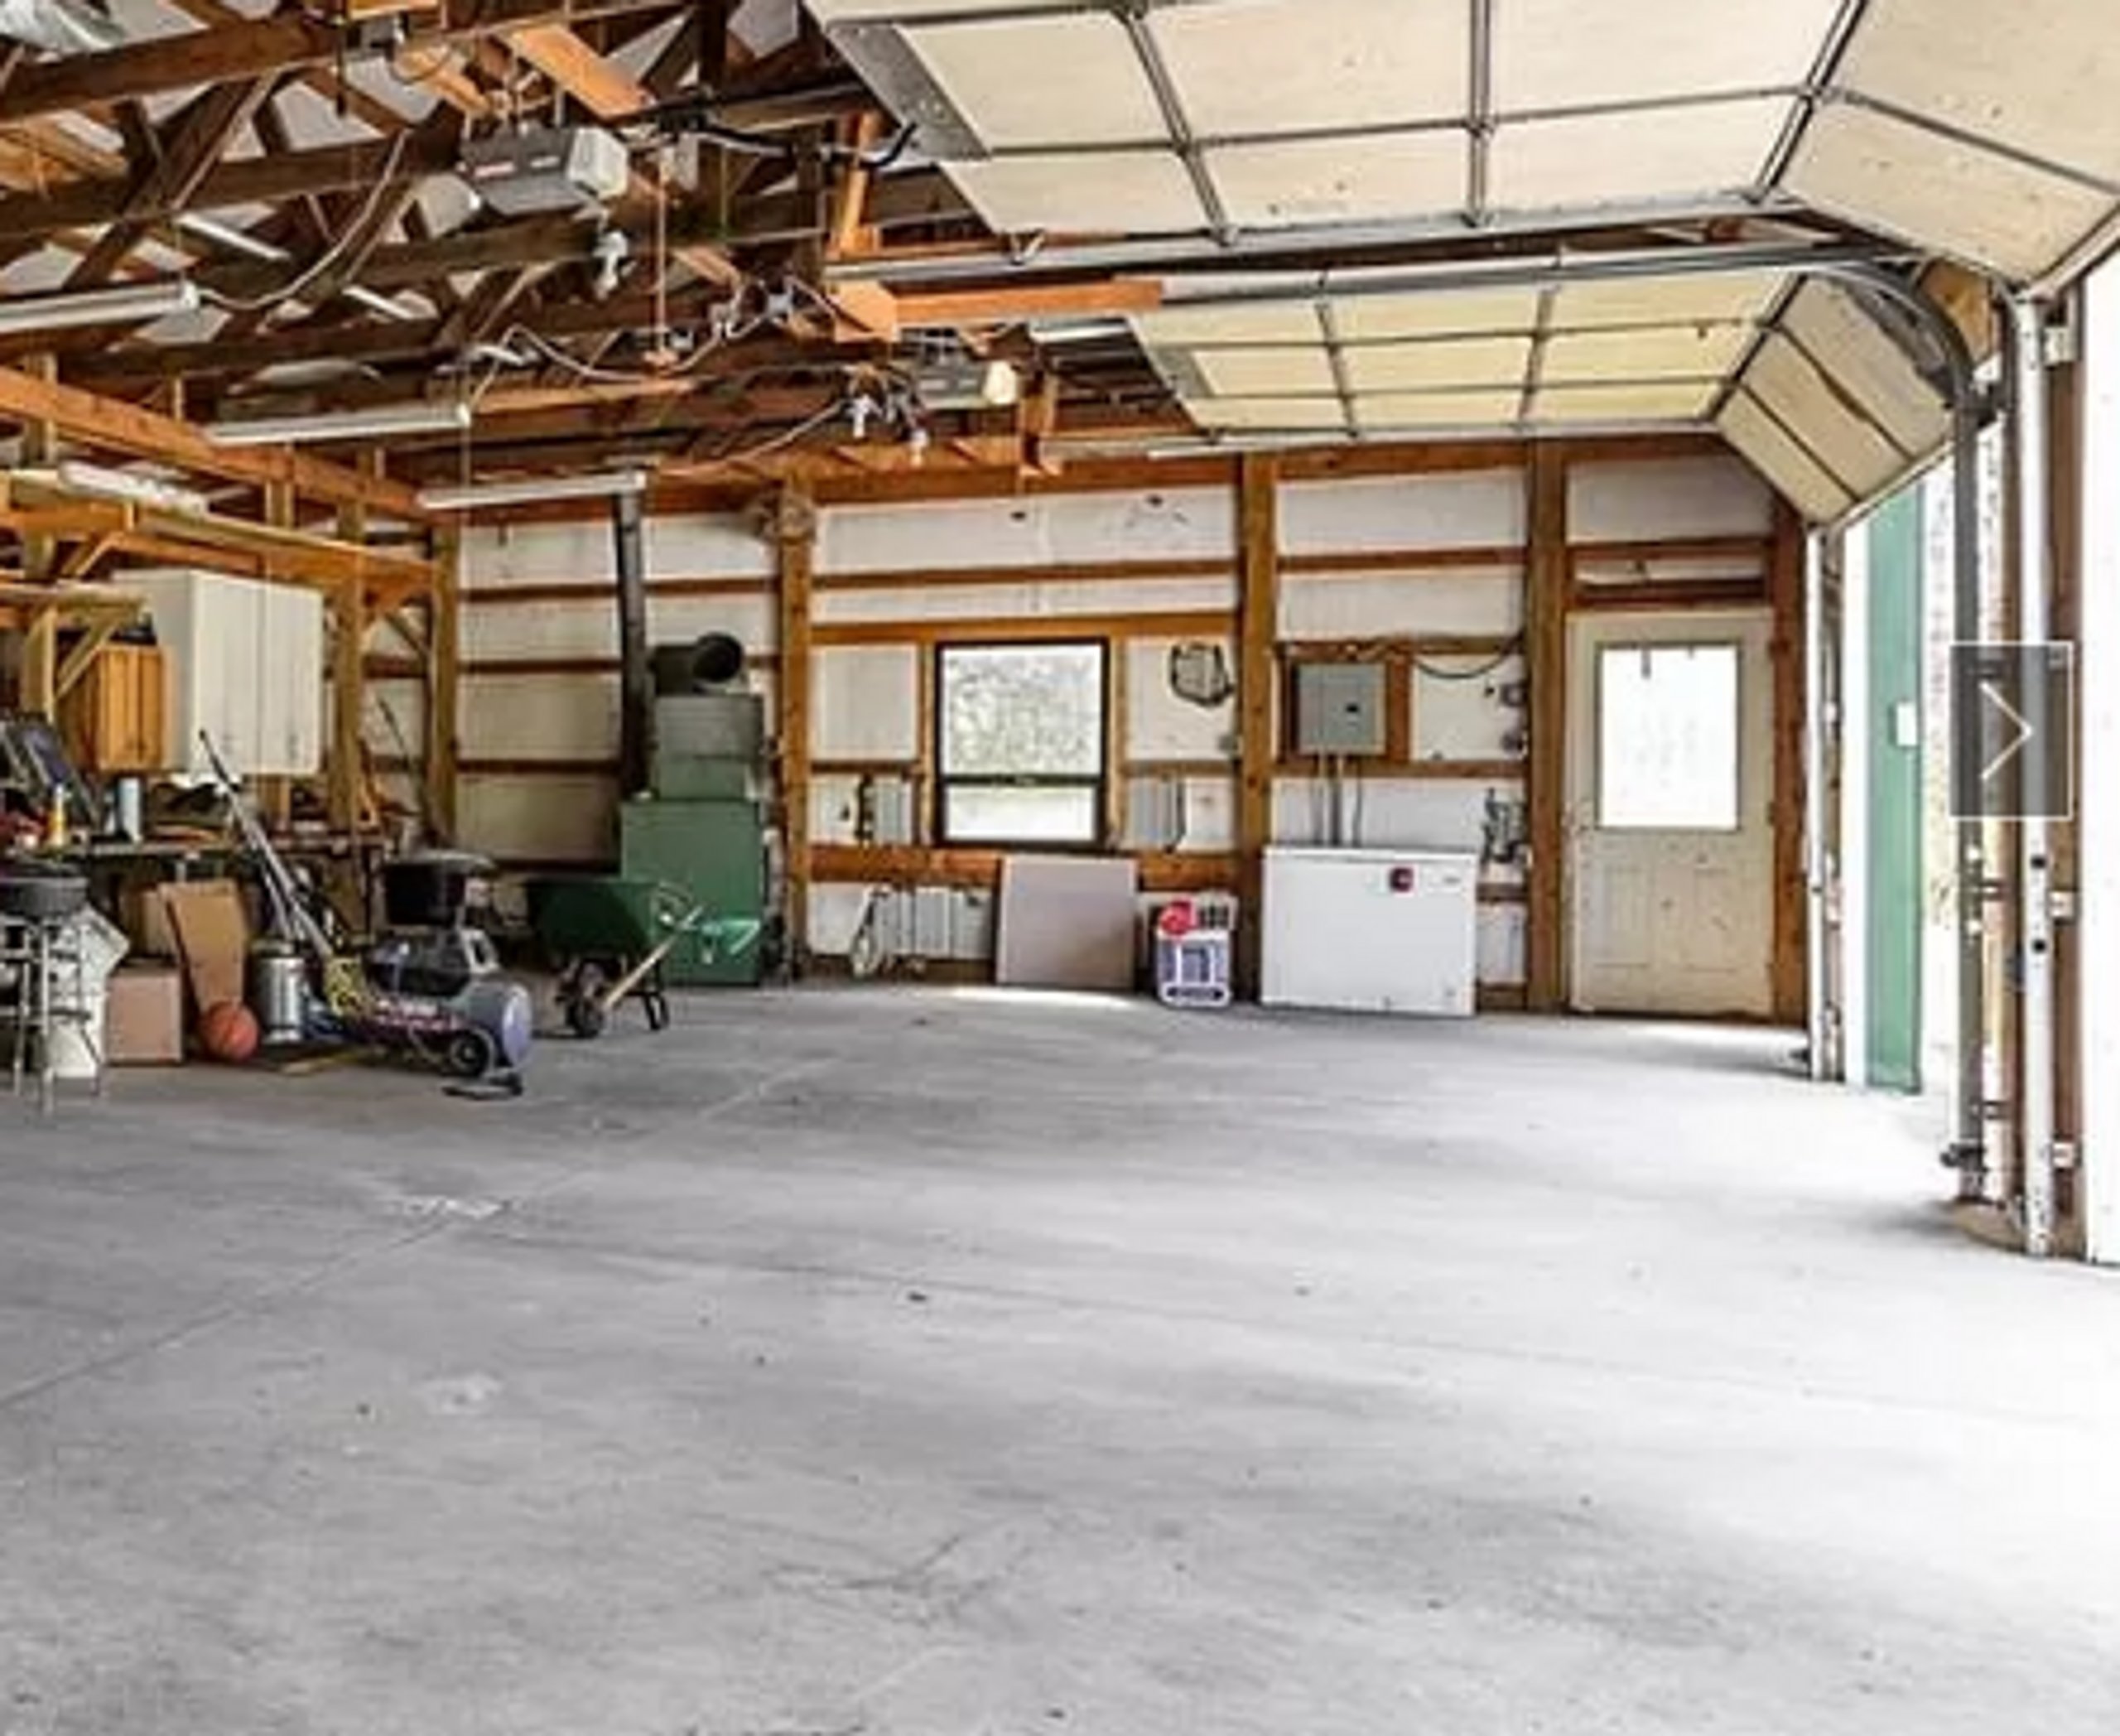 20x10 Garage self storage unit in Scottsburg, IN